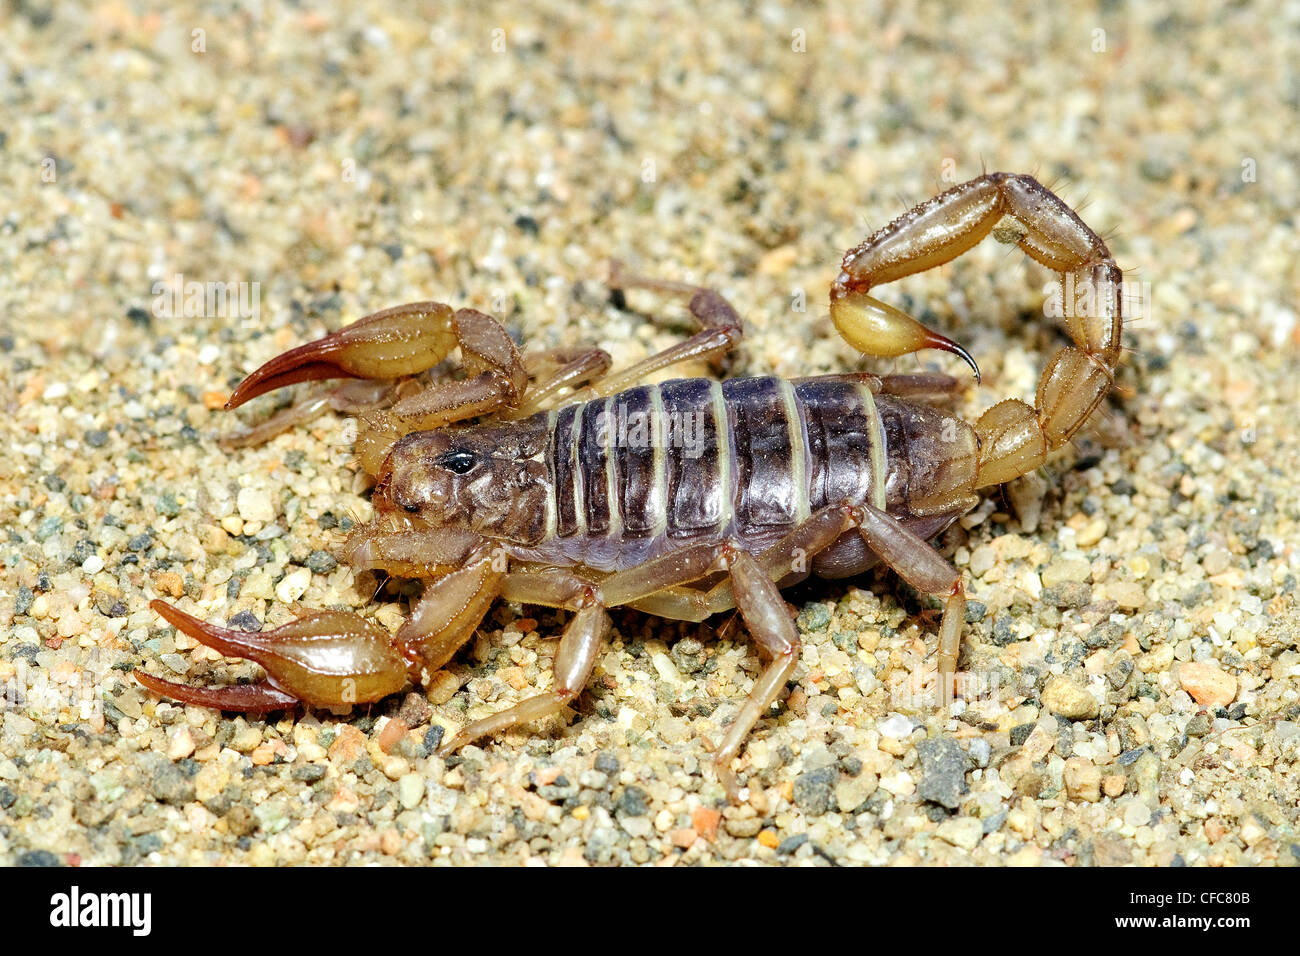 Paruroctonus boreus scorpion (nord), le sud de l'Okanagan, Colombie-Britannique Banque D'Images